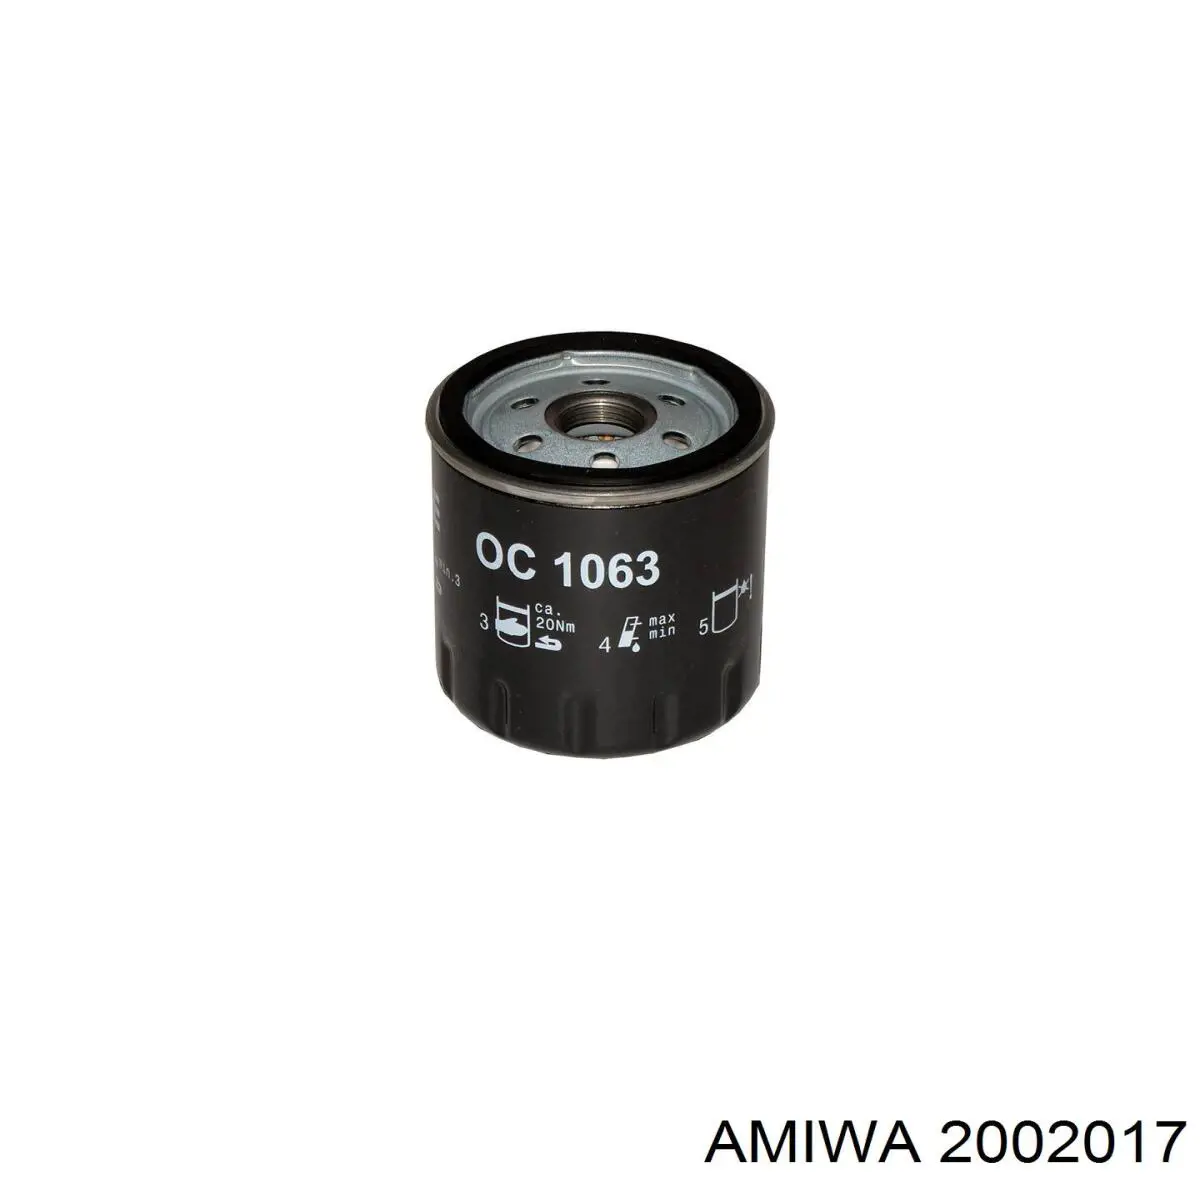 2002017 Amiwa масляный фильтр